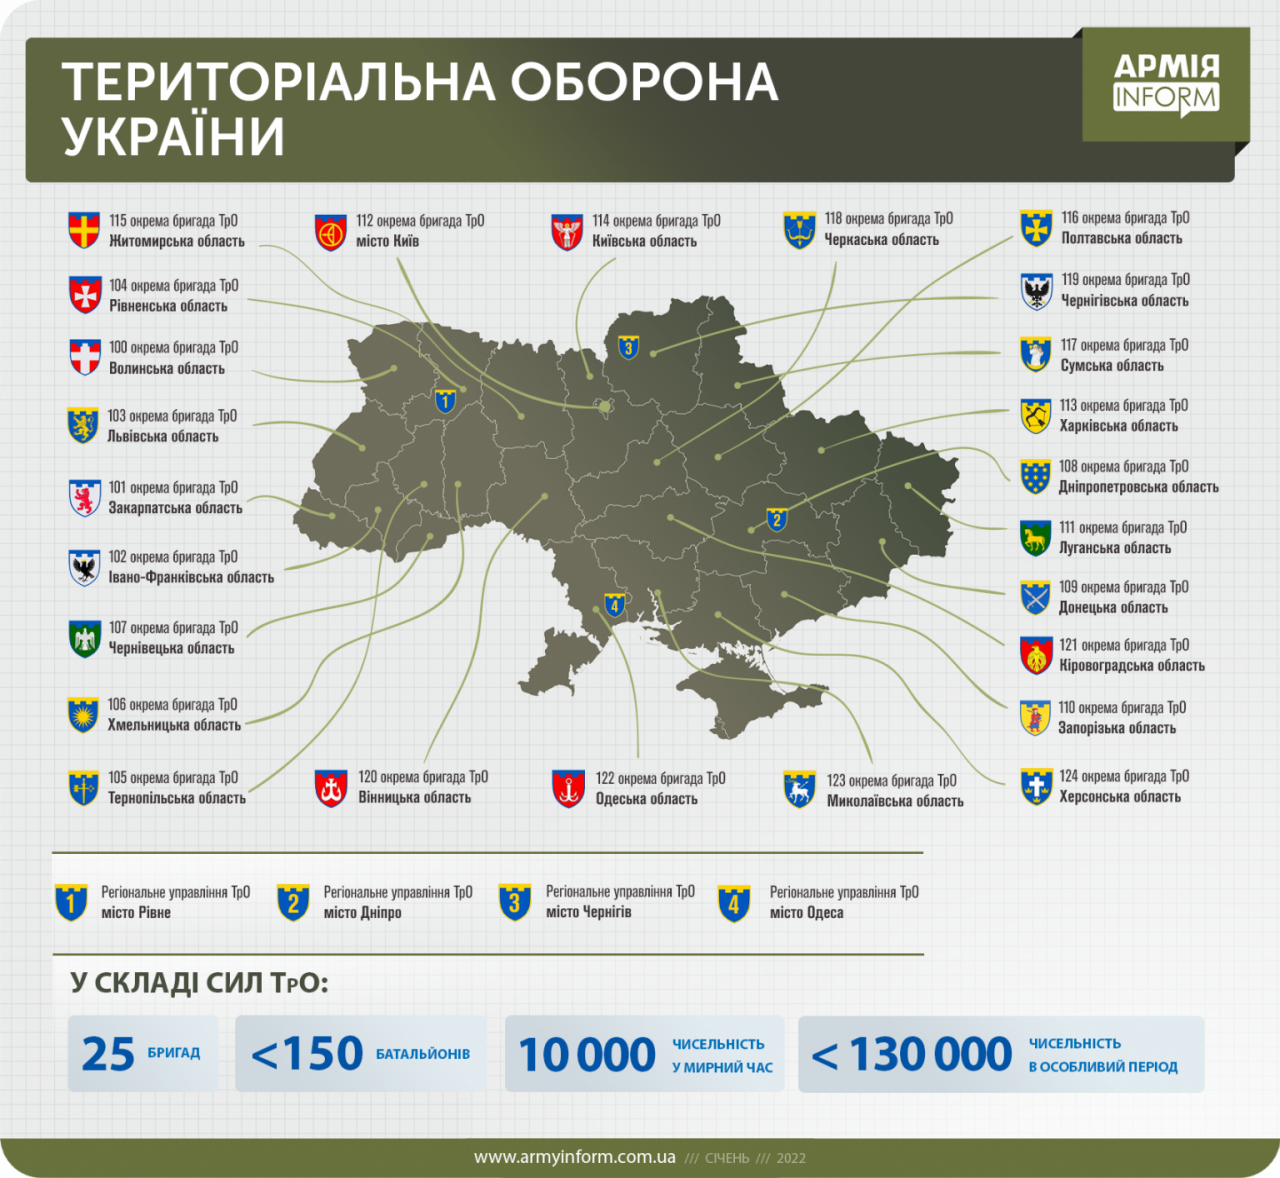 Министерство обороны Украины приняло решение о формировании 25 бригад  территориальной обороны